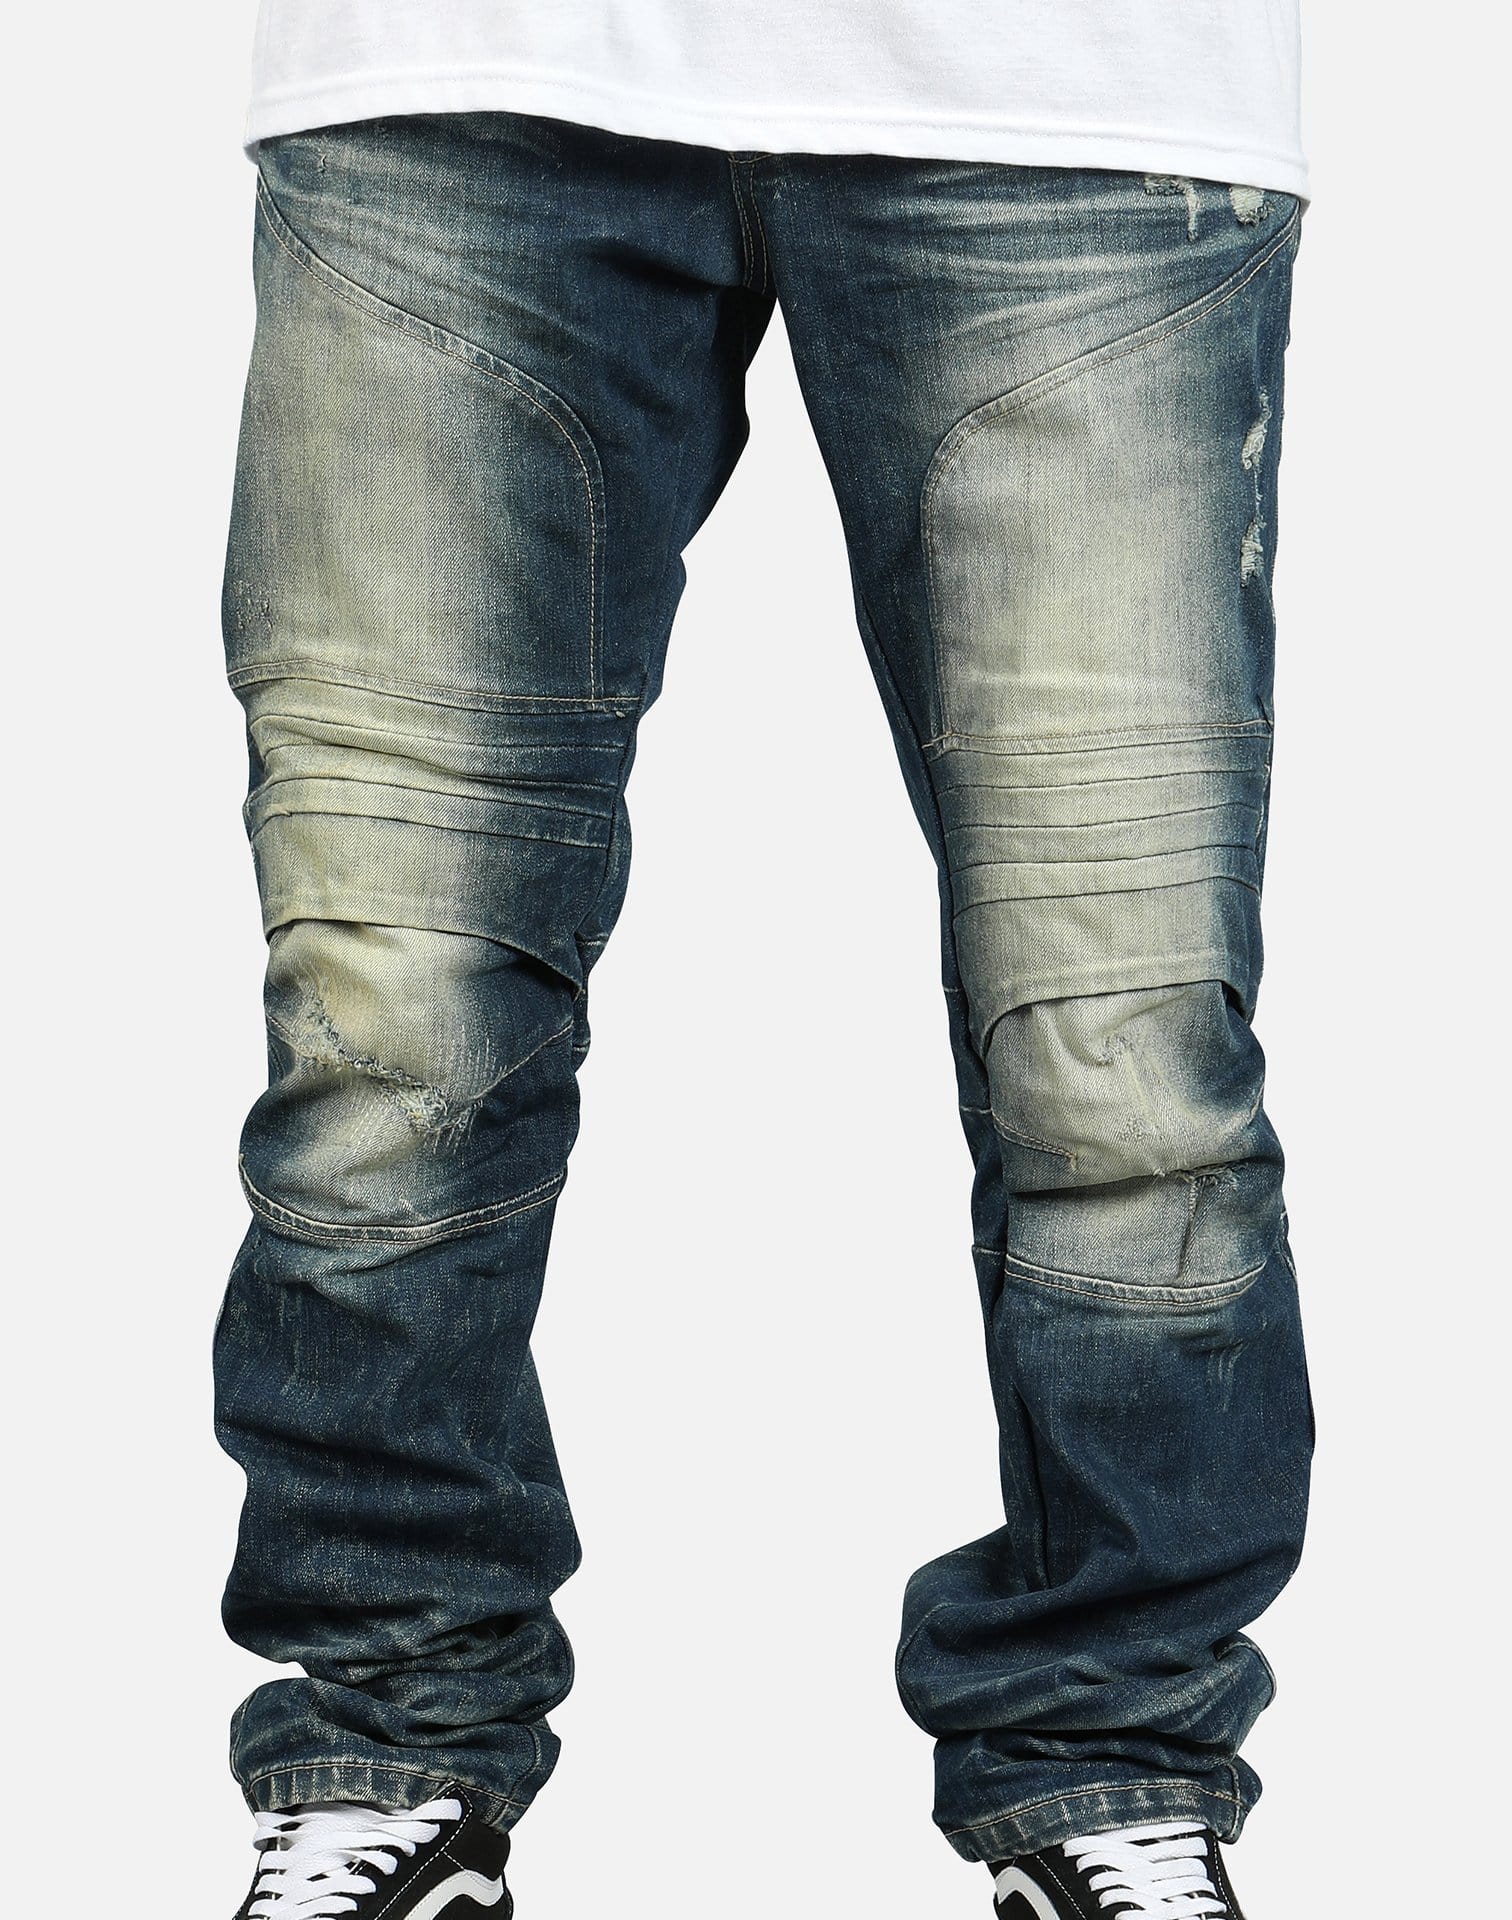 Smoke Rise Men's Fashion Denim Jeans